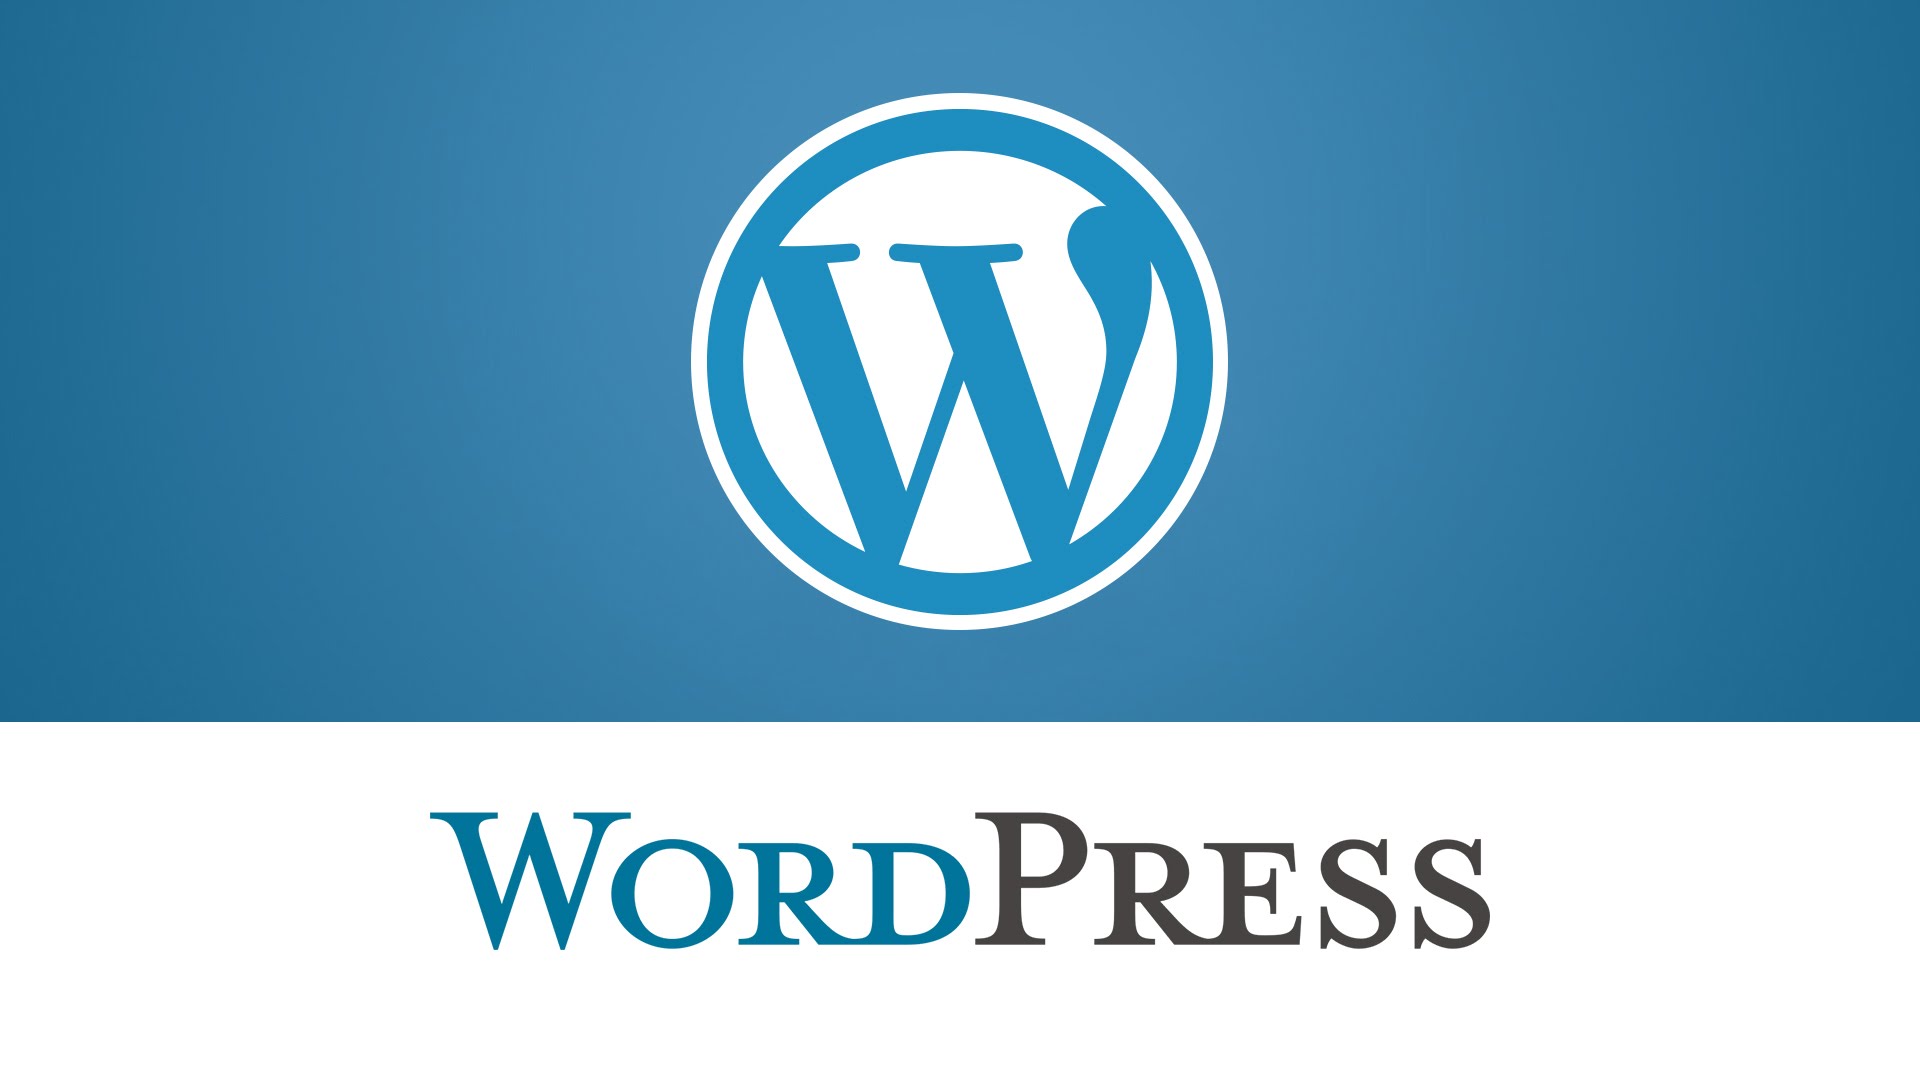 WordPress - лучшая блоговая платформа 2018